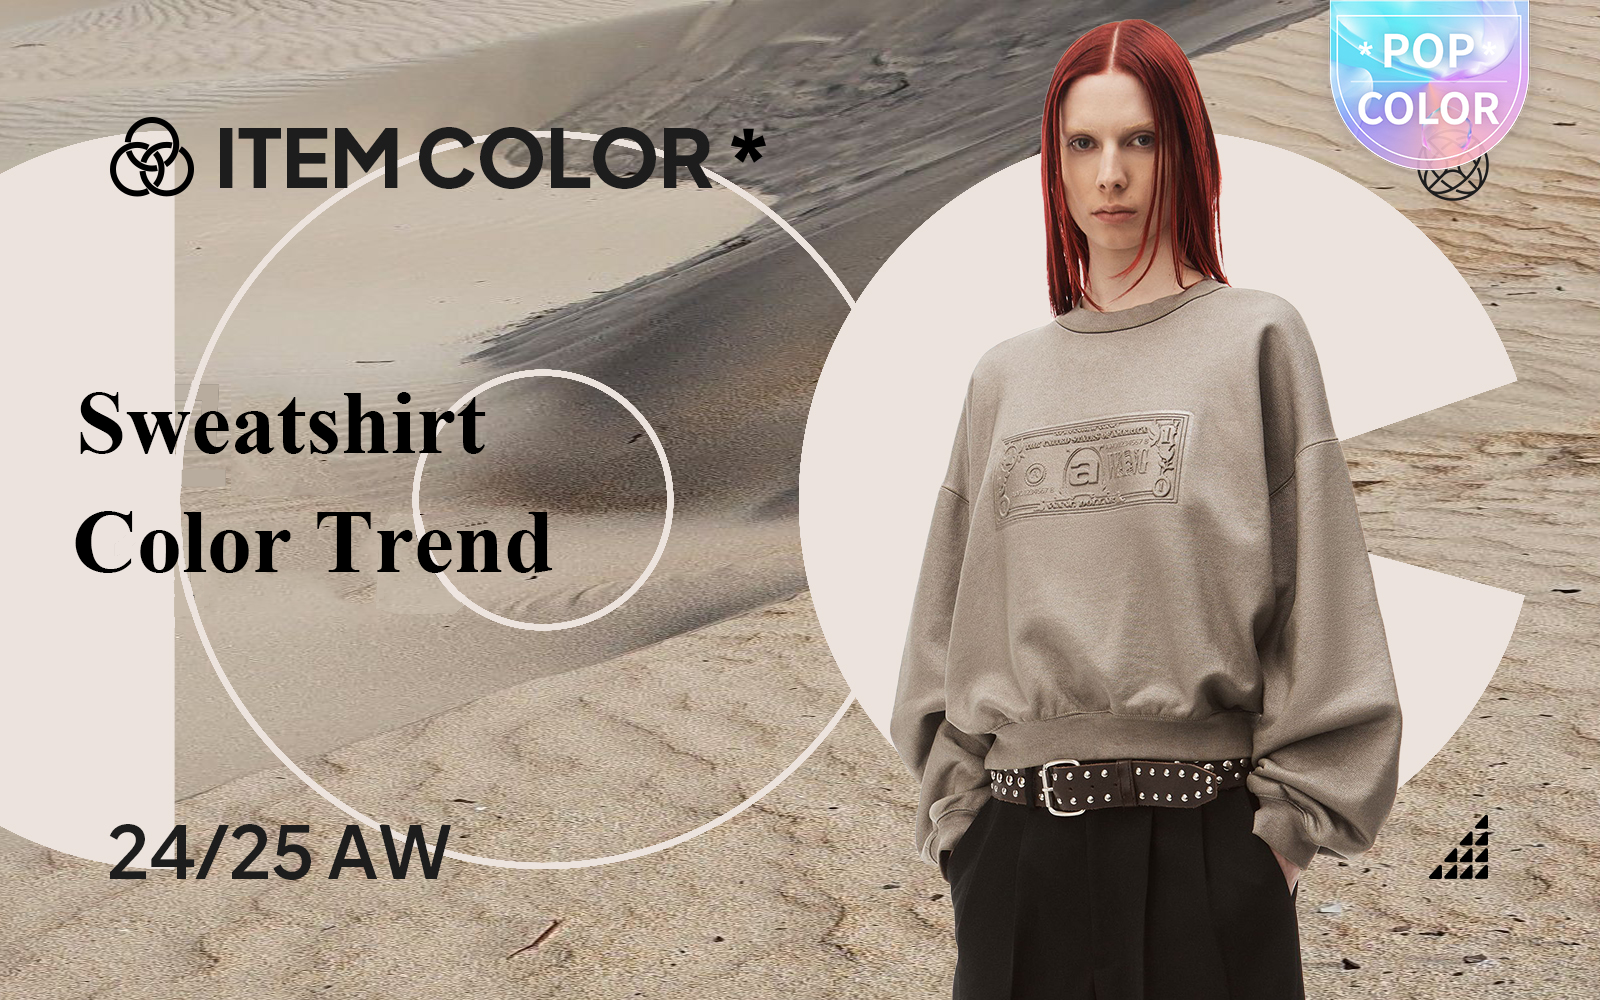 The Color Trend for Women's Sweatshirt